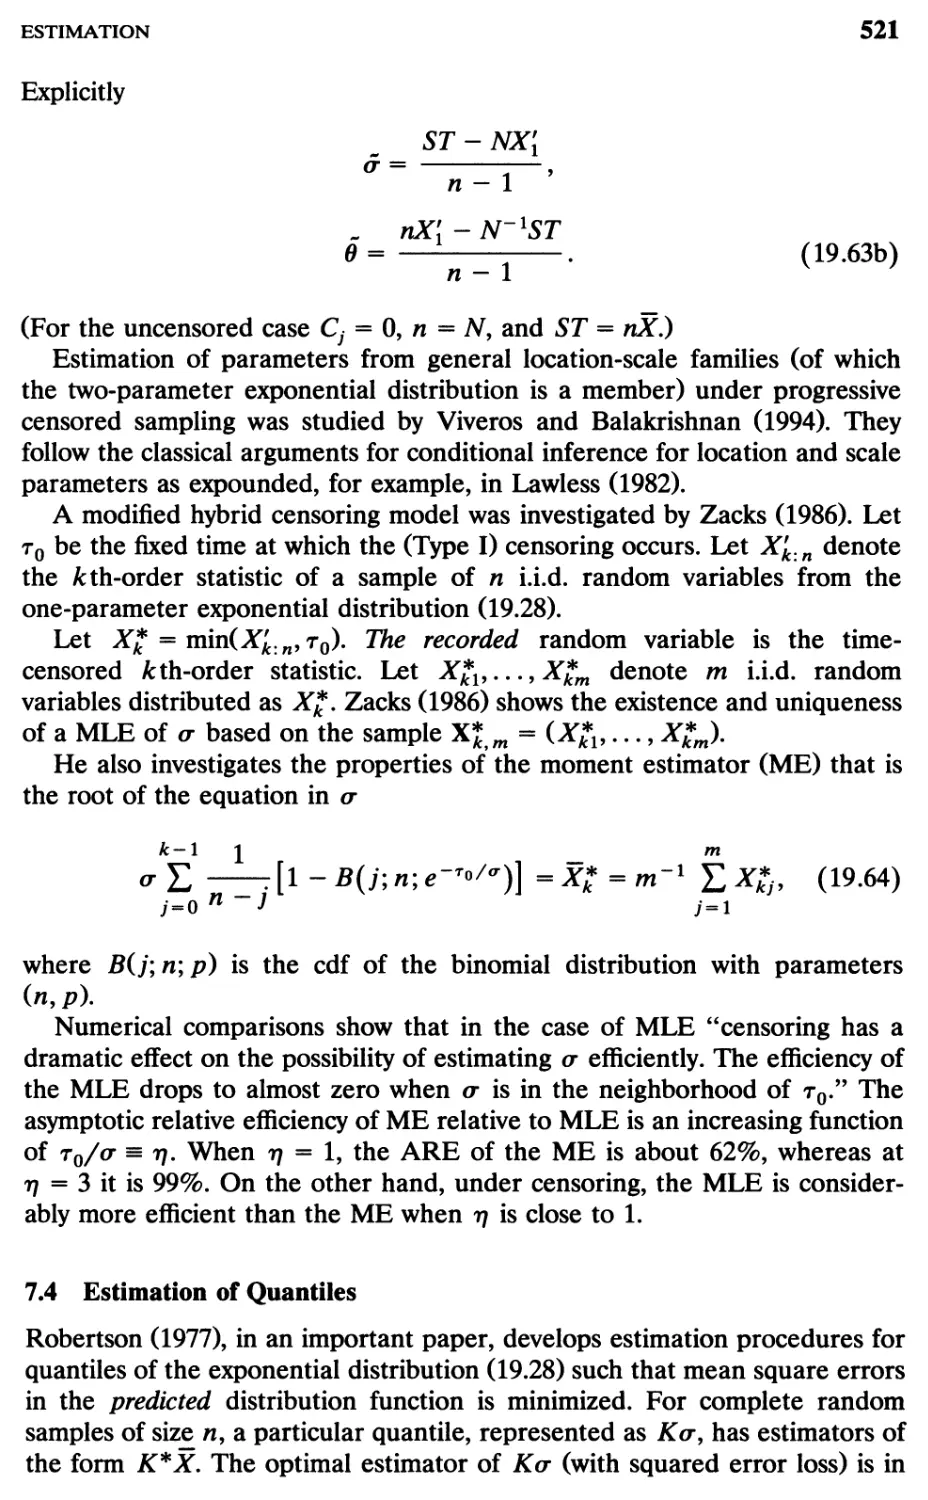 7.4 Estimation of Quantiles, 521